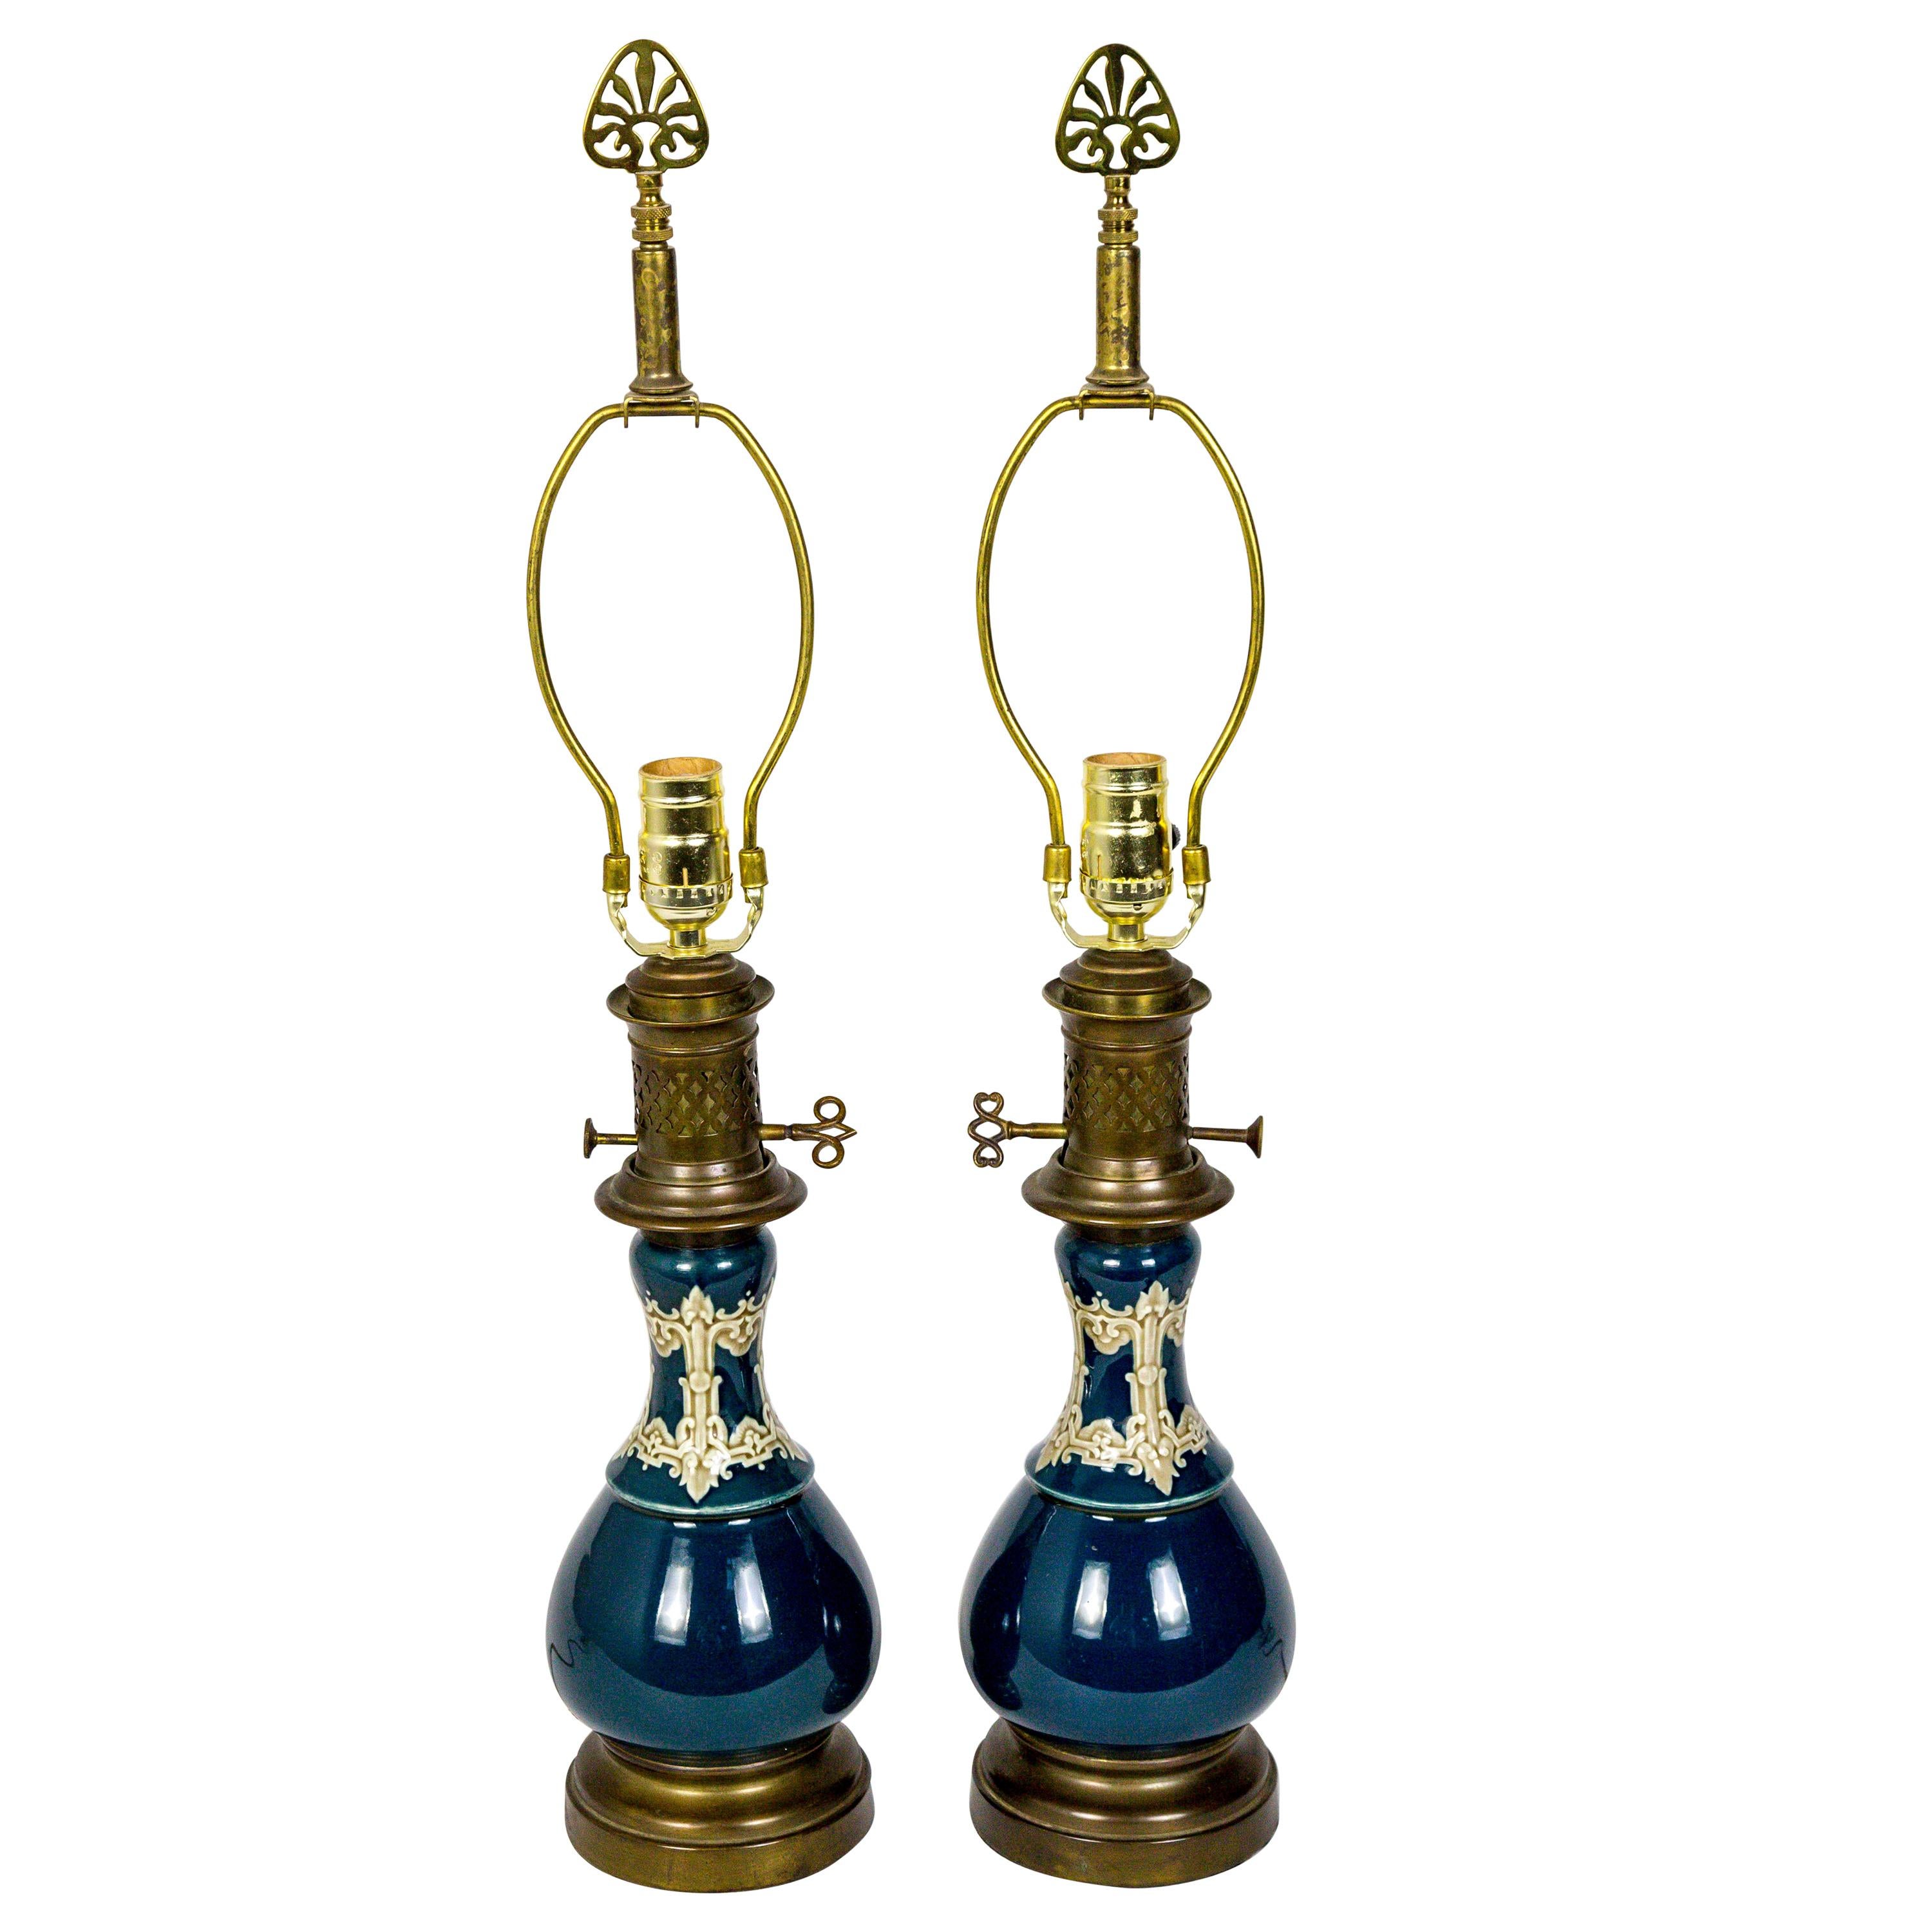 Dark Turquoise Ceramic 19th Century Converted Kerosine Lamps, Pair For Sale